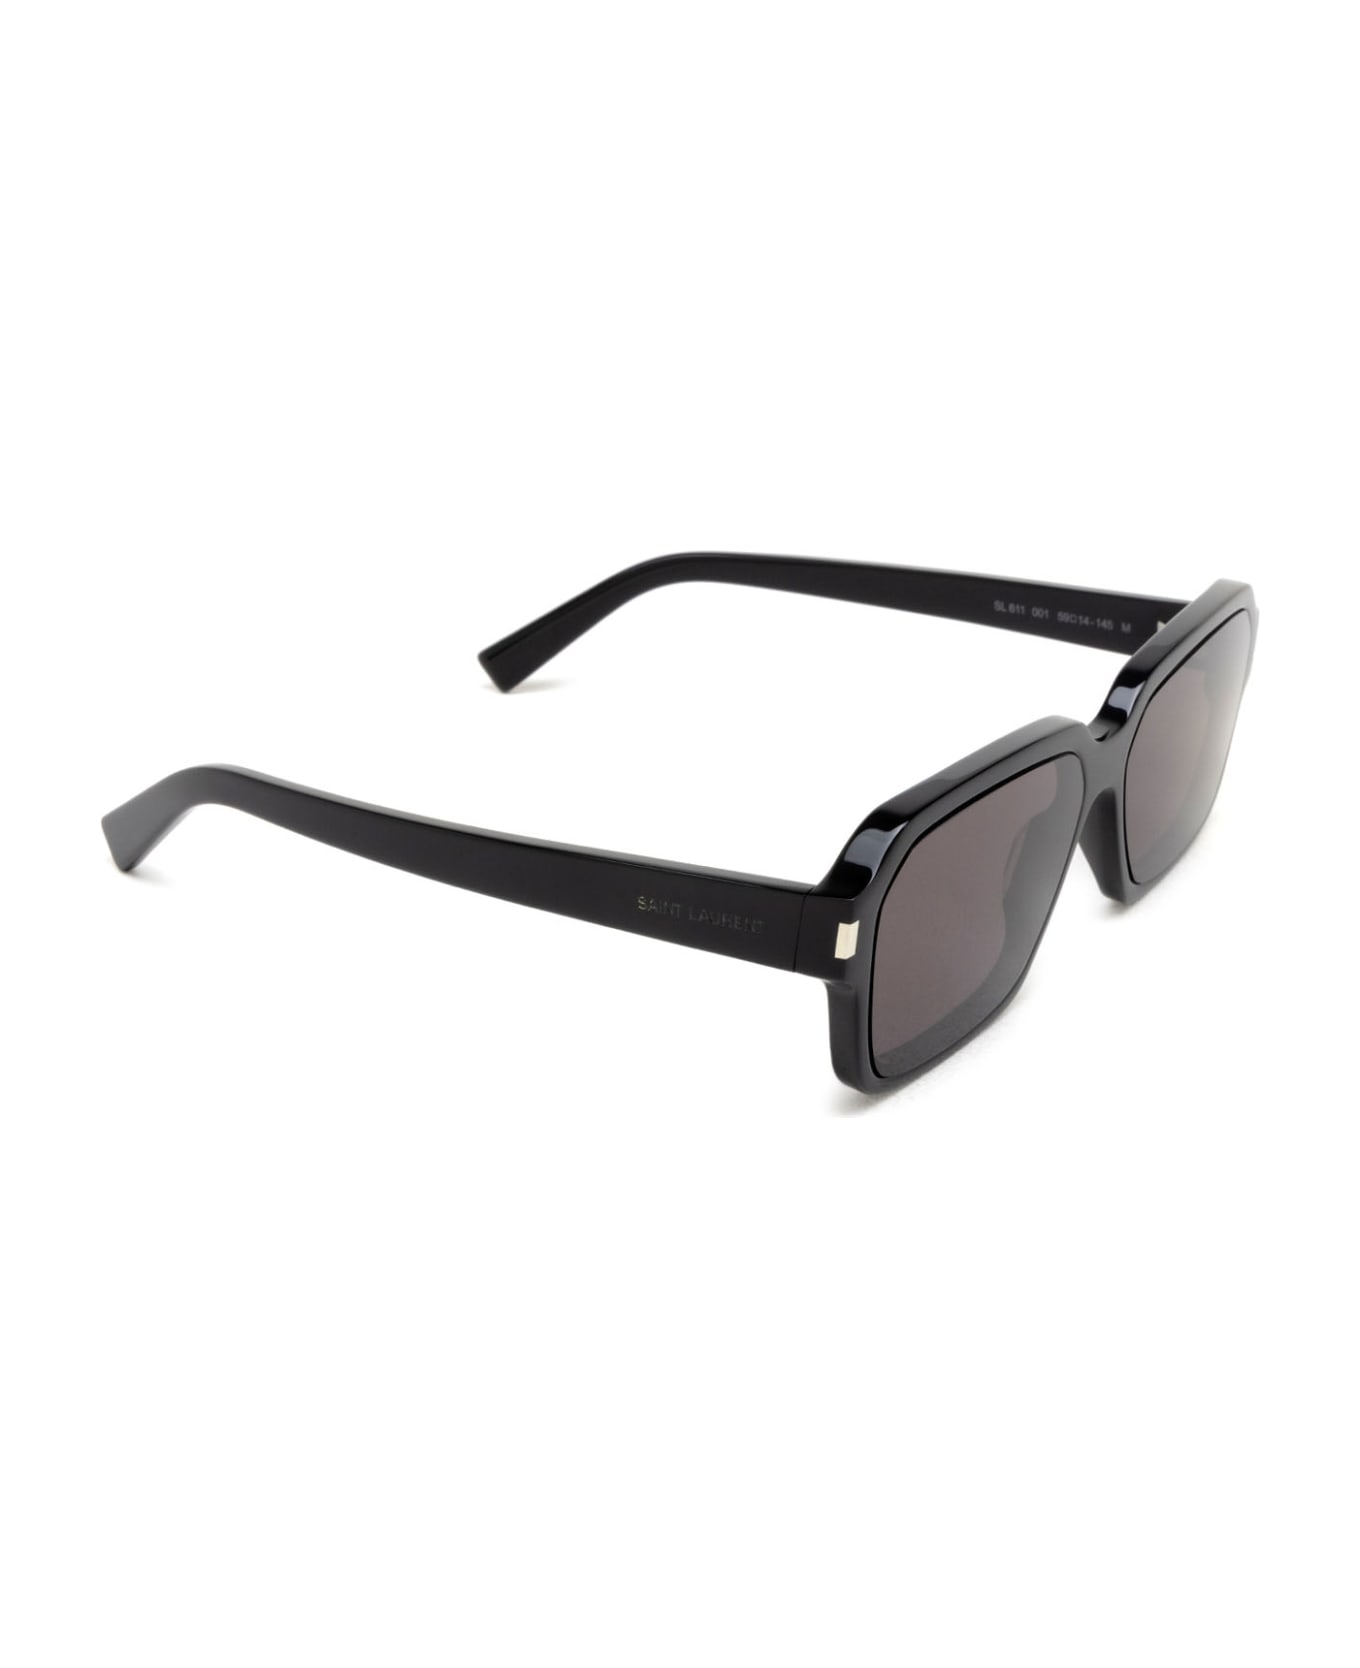 Saint Laurent Eyewear Sl 611 Black Sunglasses - Black